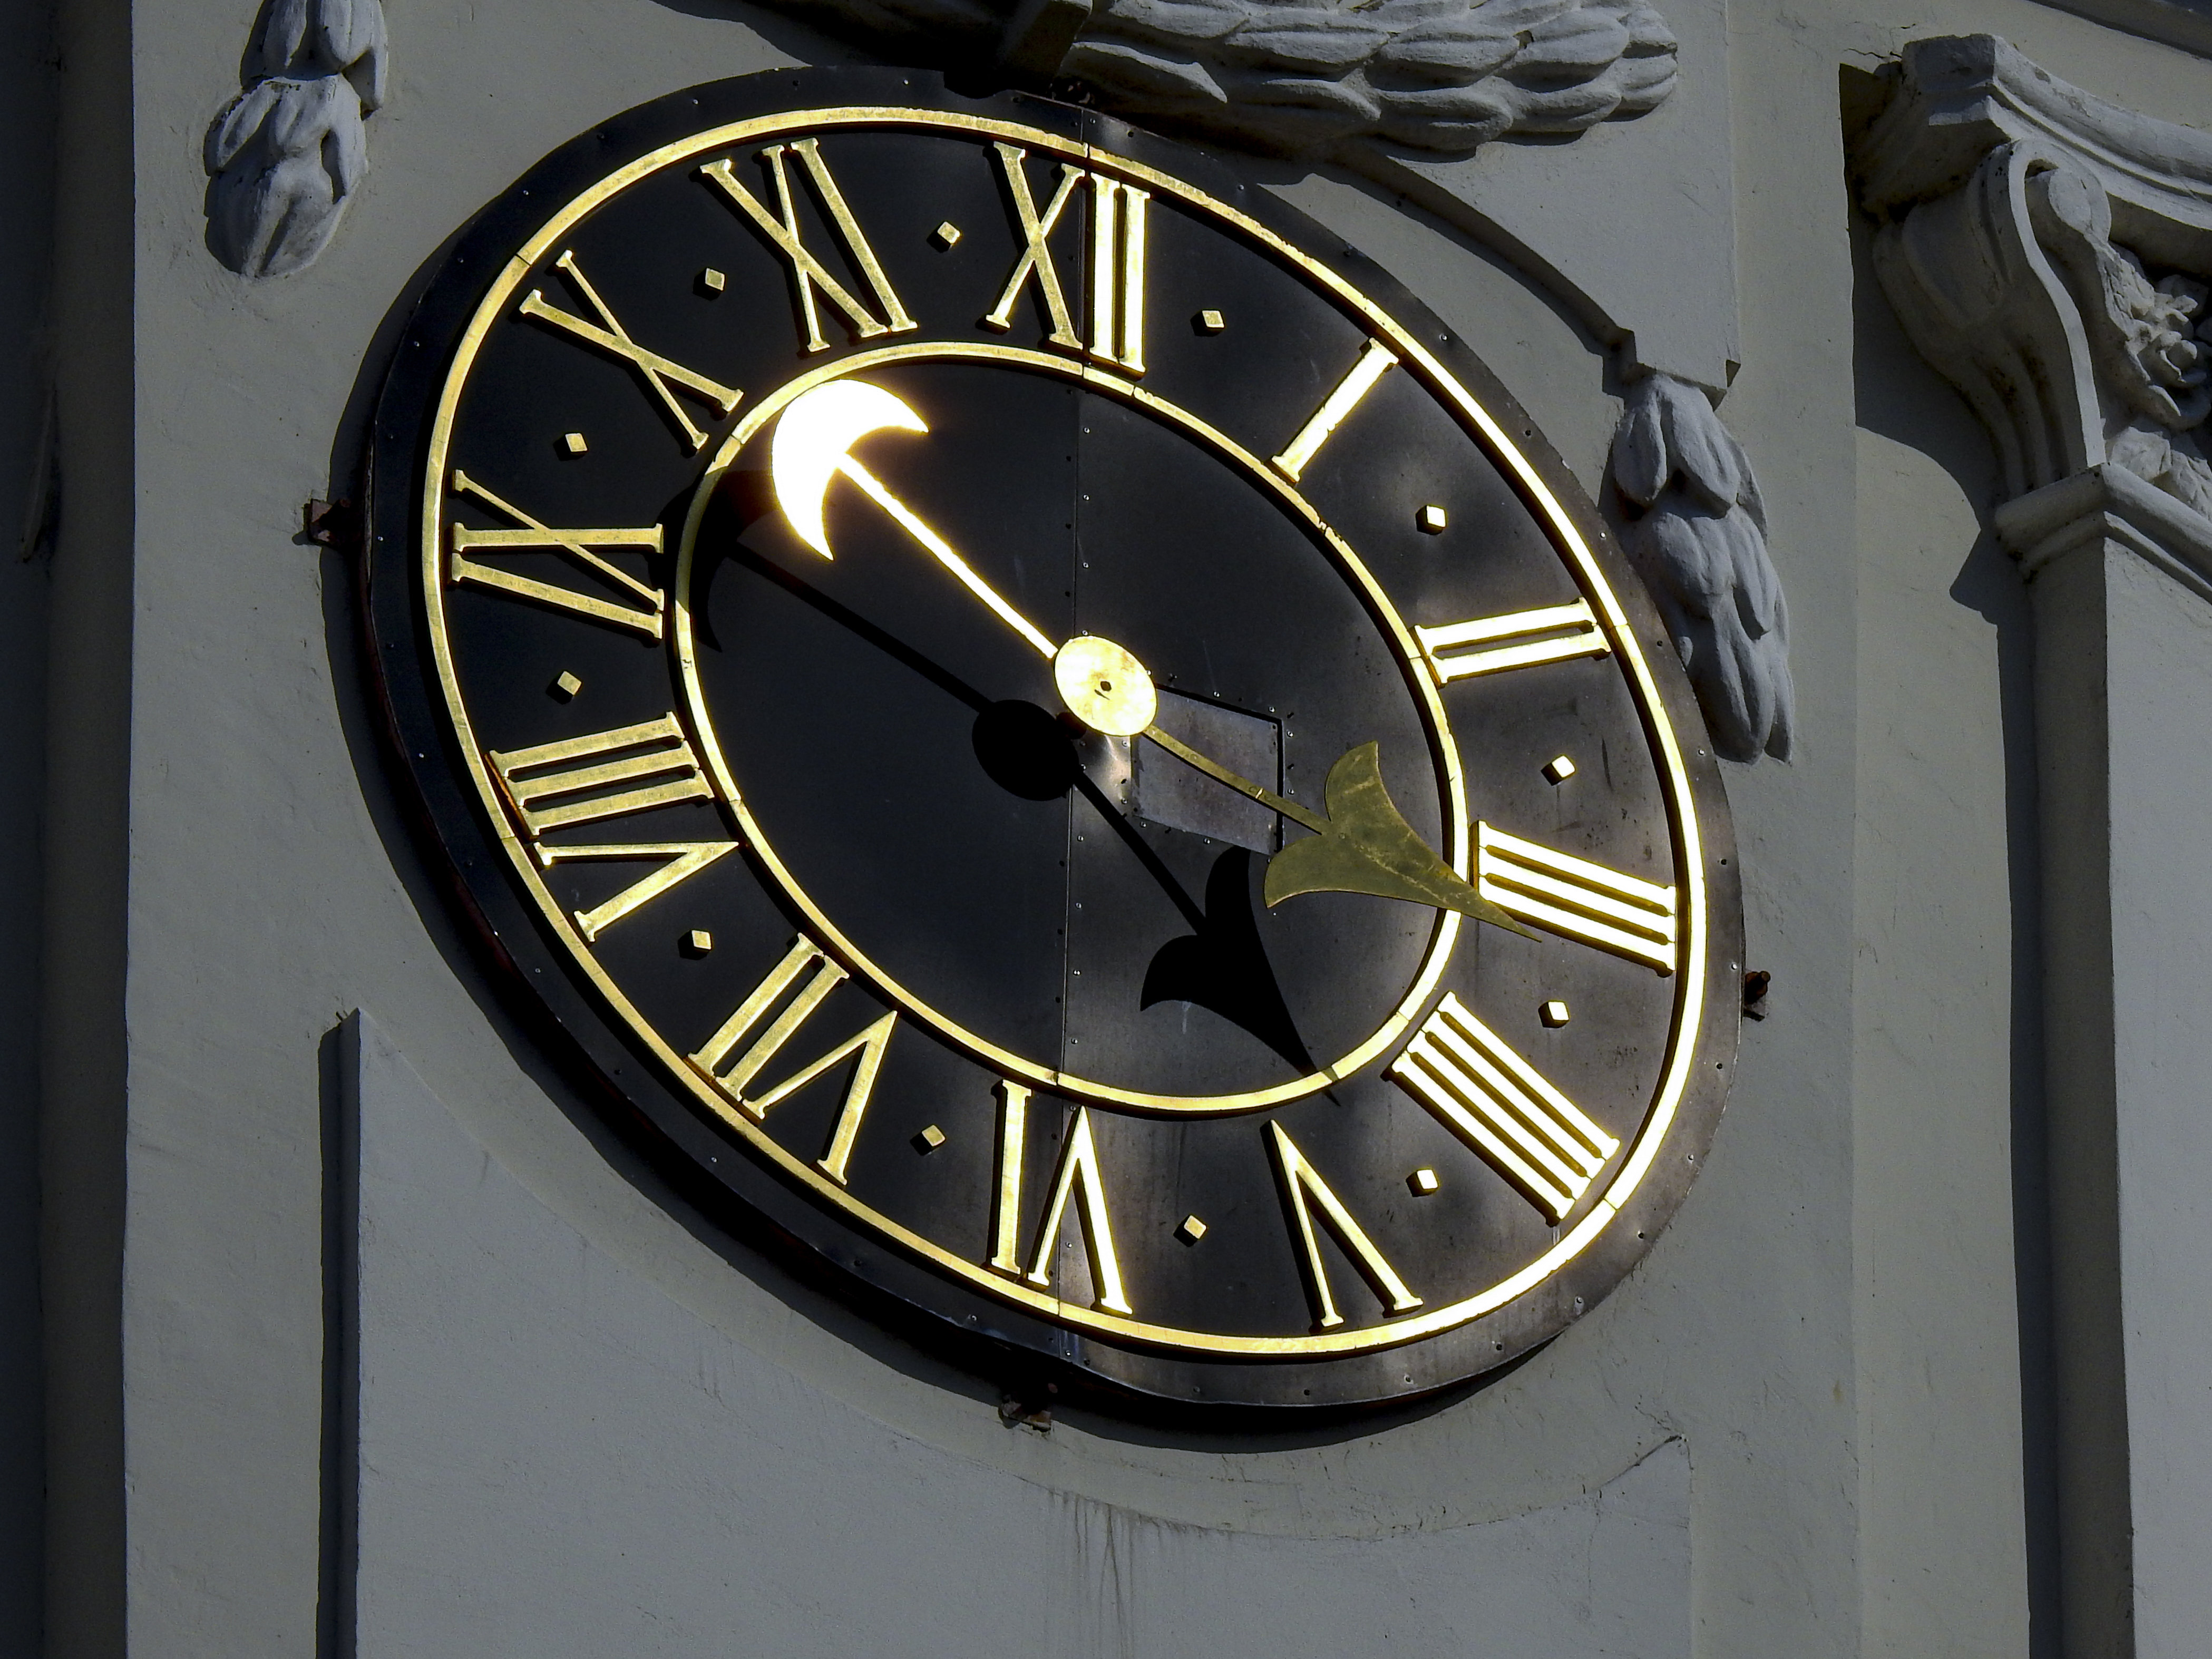 Paskutinį kovo sekmadienį, trečią valandą nakties, laikrodžio rodyklės pasukamos valanda į priekį – įvedamas vasaros laikas.V.Ščiavinsko nuotr.